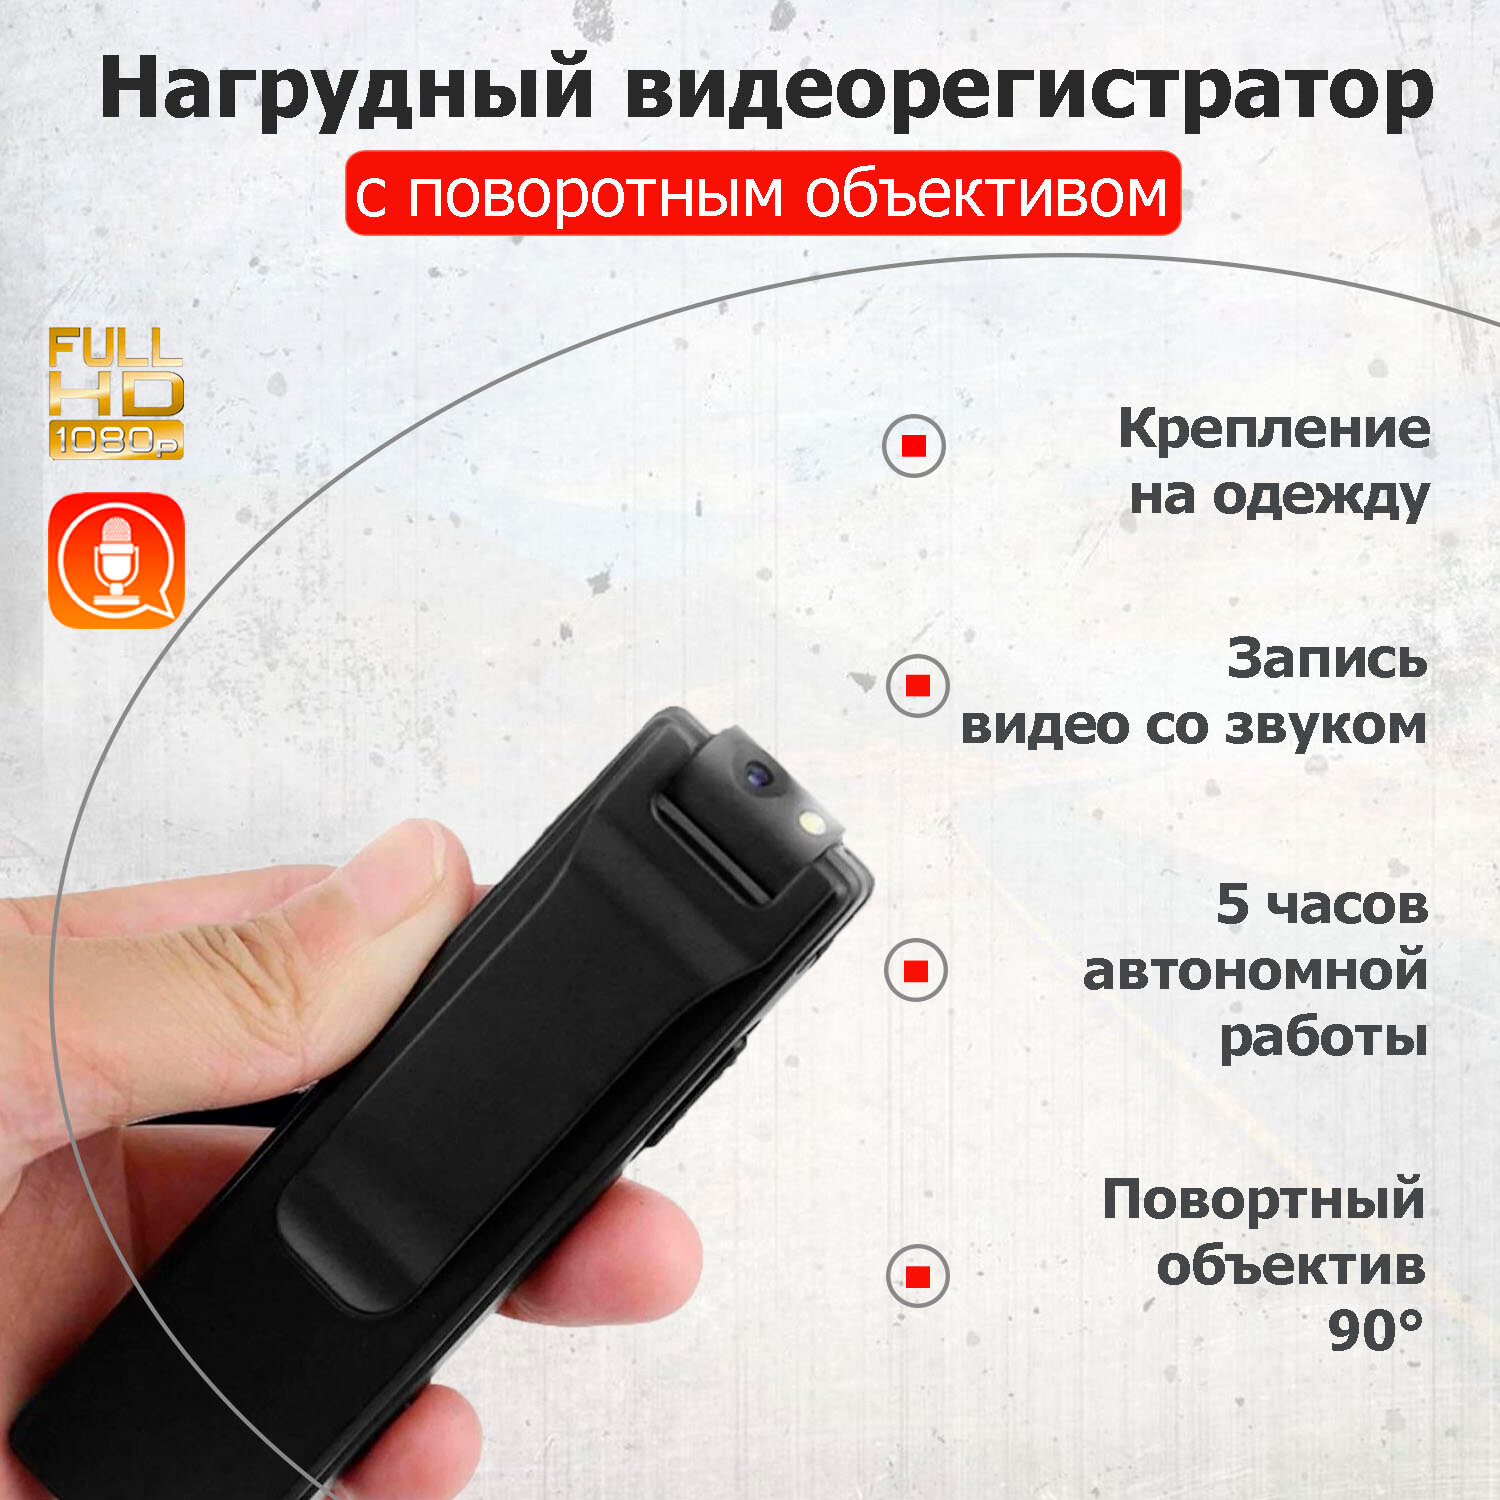 Миниатюрная видеокамера для дома или офиса Van A3 / Автономная миникамера / Нагрудный видеорегистратор (FulHD поворотный объектив)